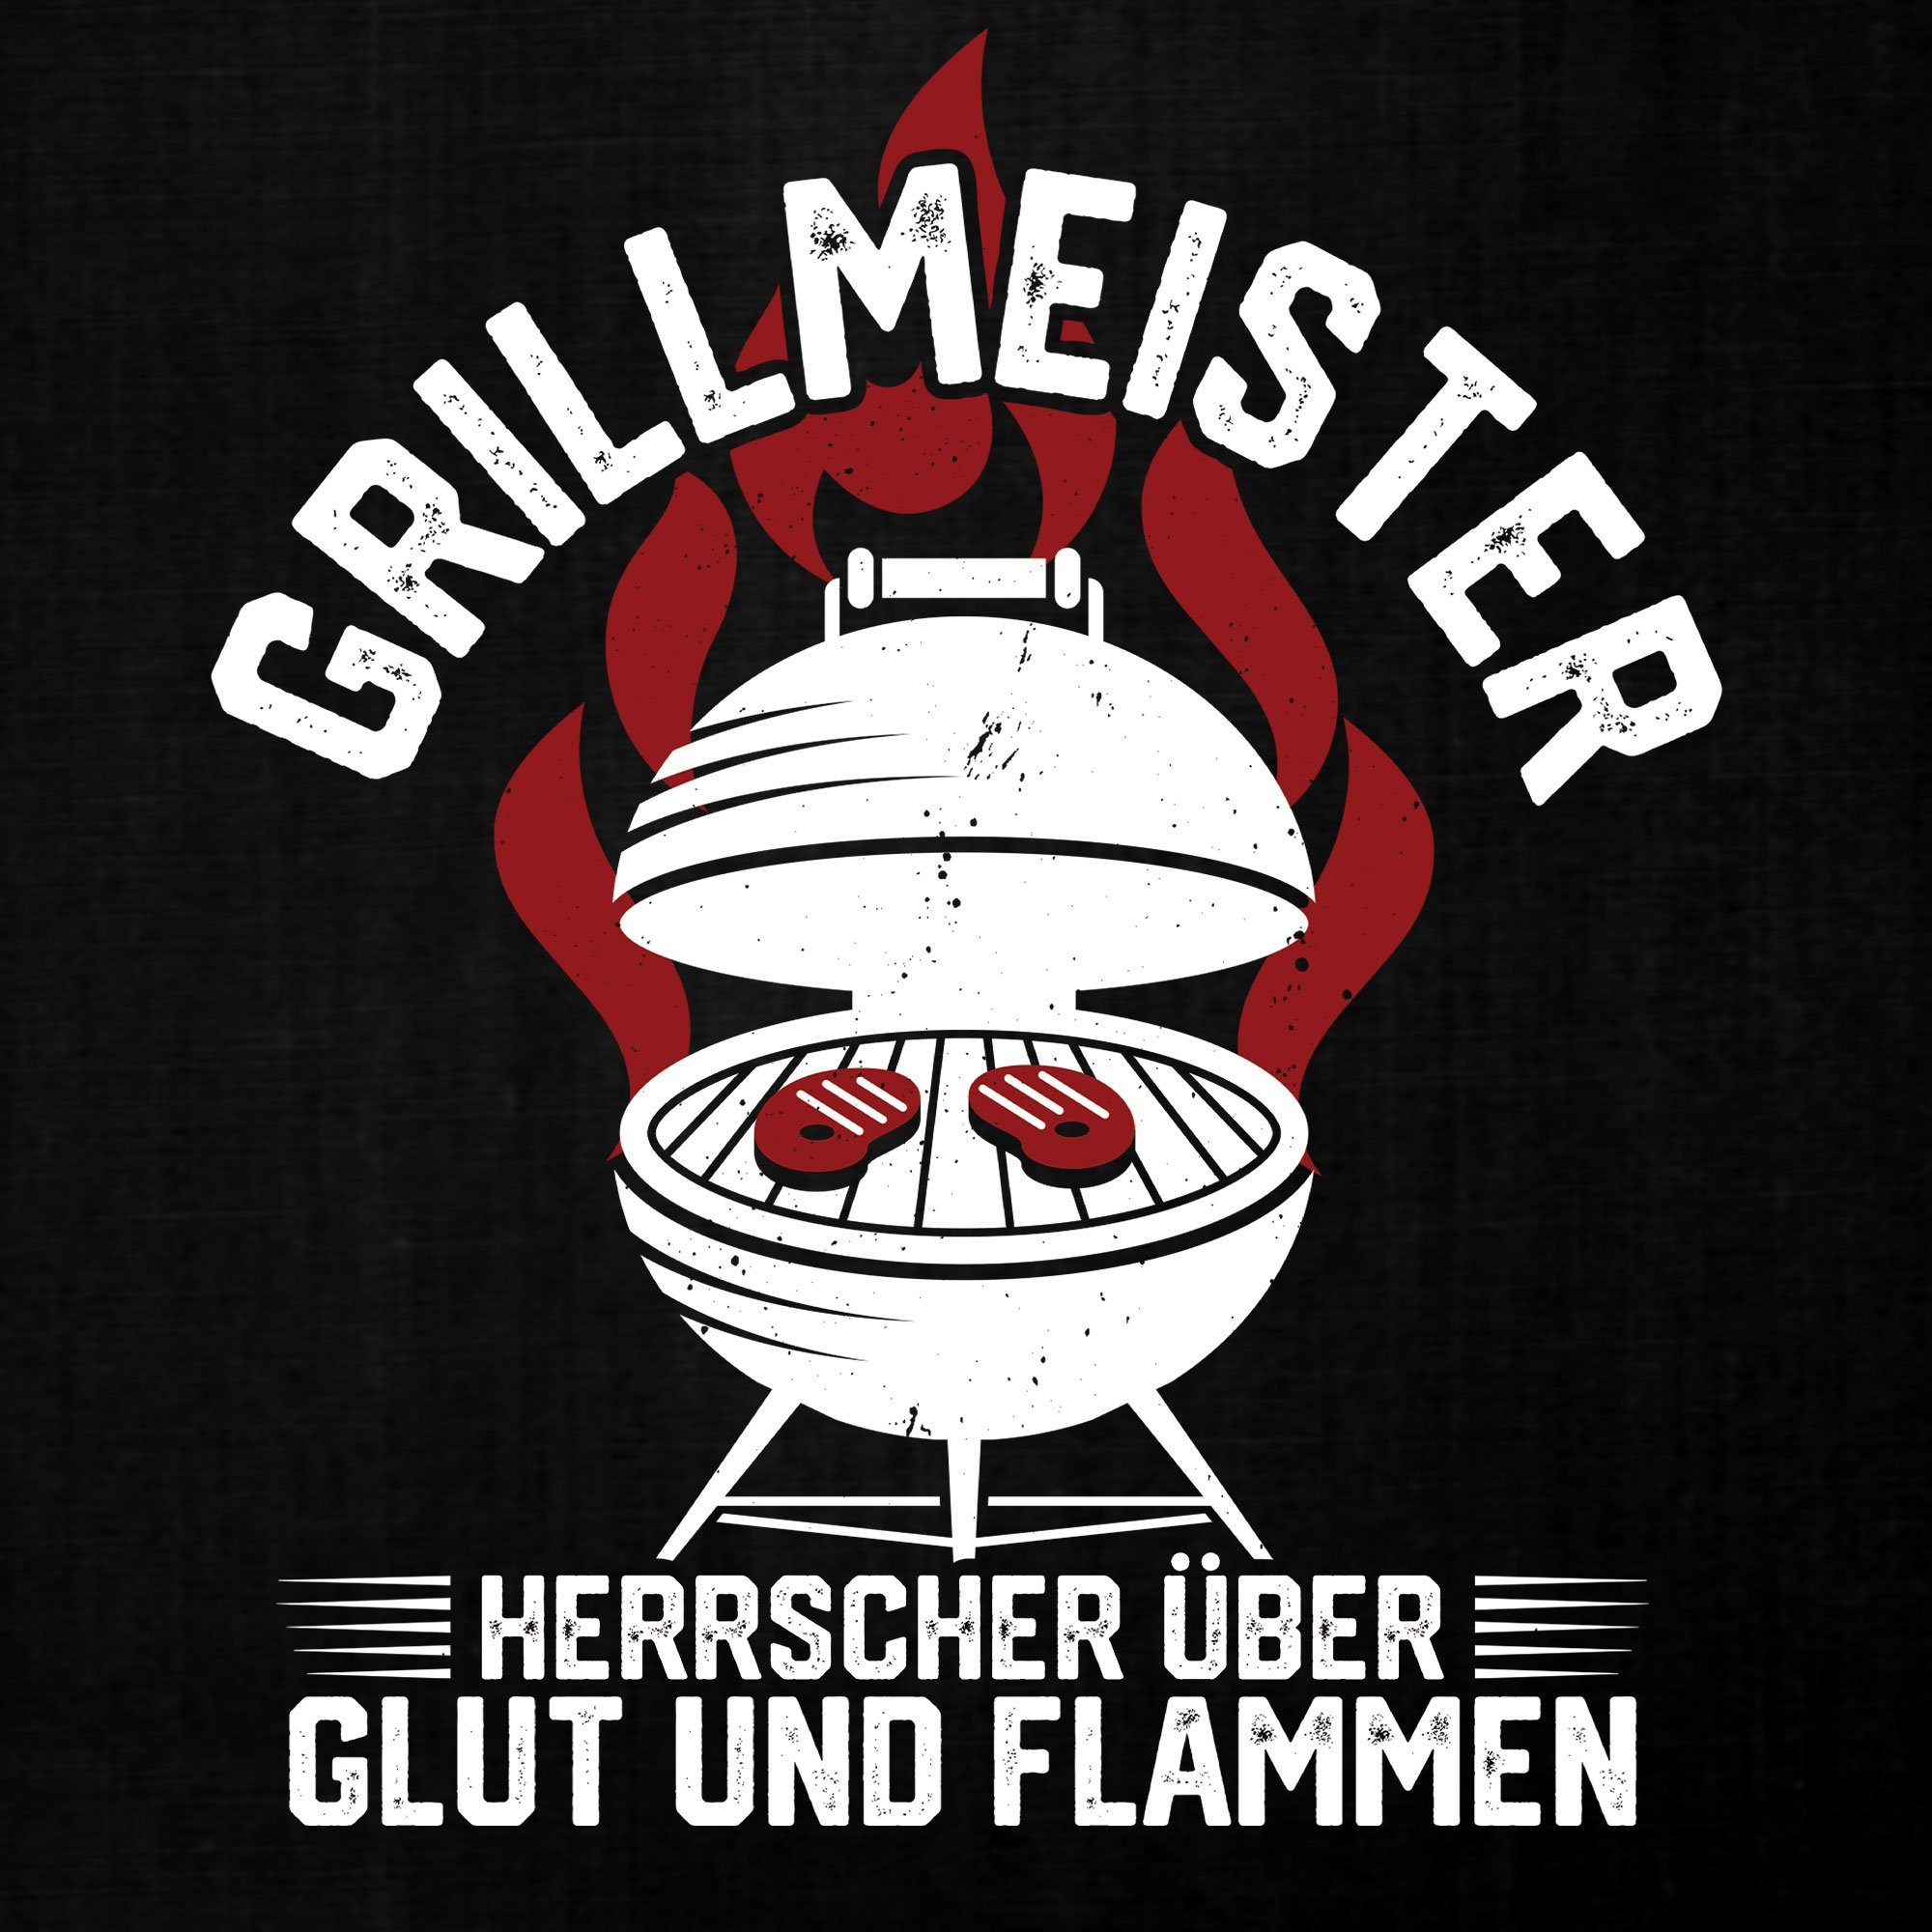 Quattro Formatee Achselhemd Grillmeister Grillen Glut Statement Flammen Spruch Lustiger (1-St) - Herren